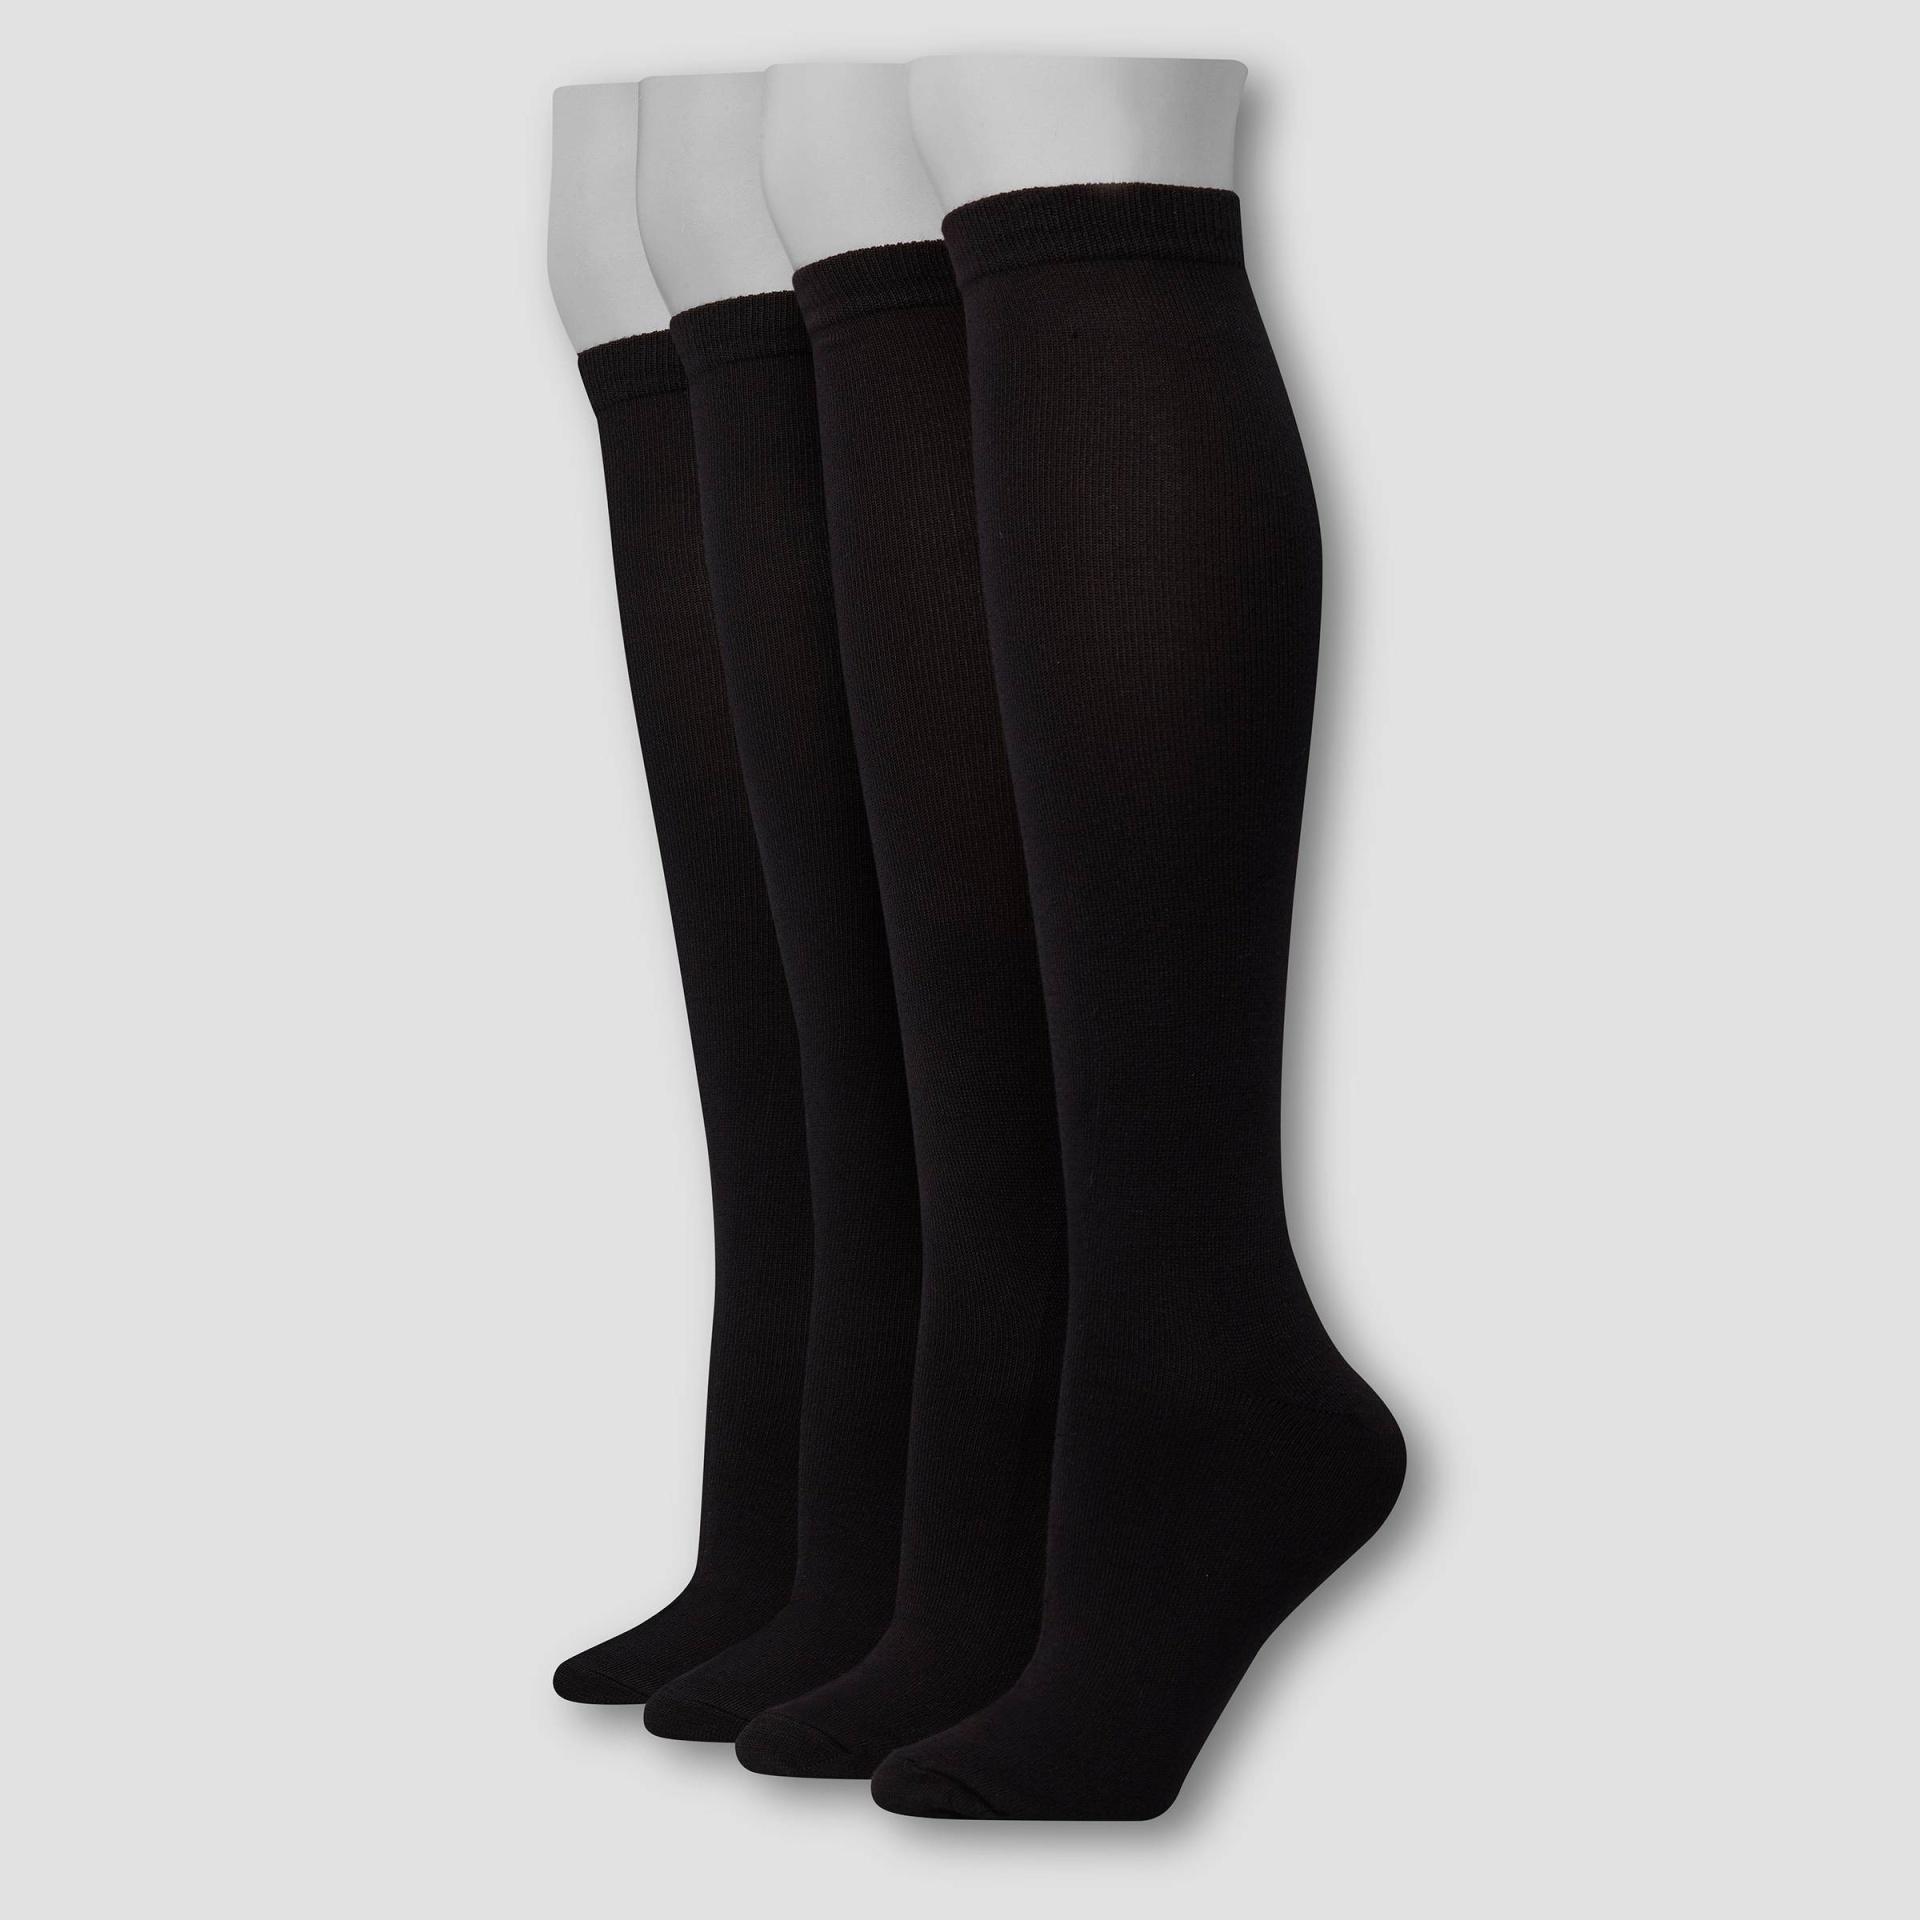 slide 1 of 2, Hanes Premium 4 Pack Women's Extended Size Comfort Soft Lightweight Knee High Socks - Black 8-12, 4 ct